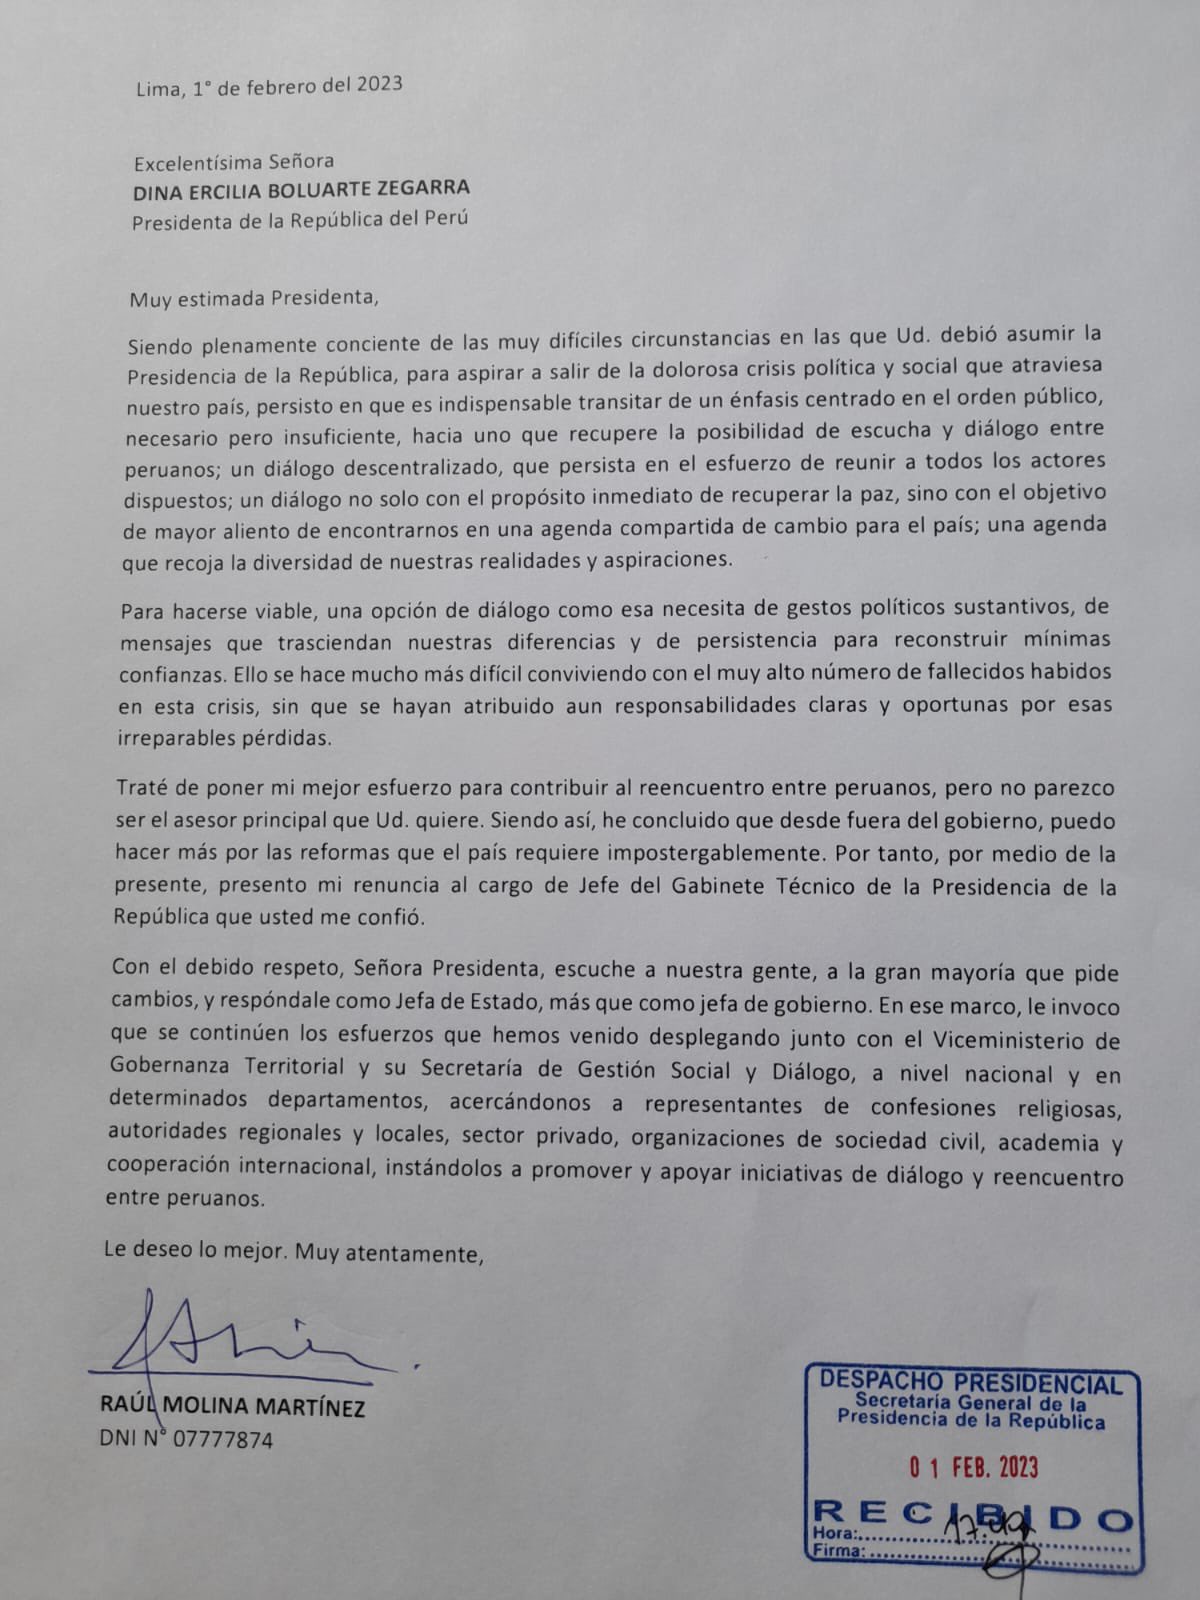 Carta de renuncia de Raúl Molina.